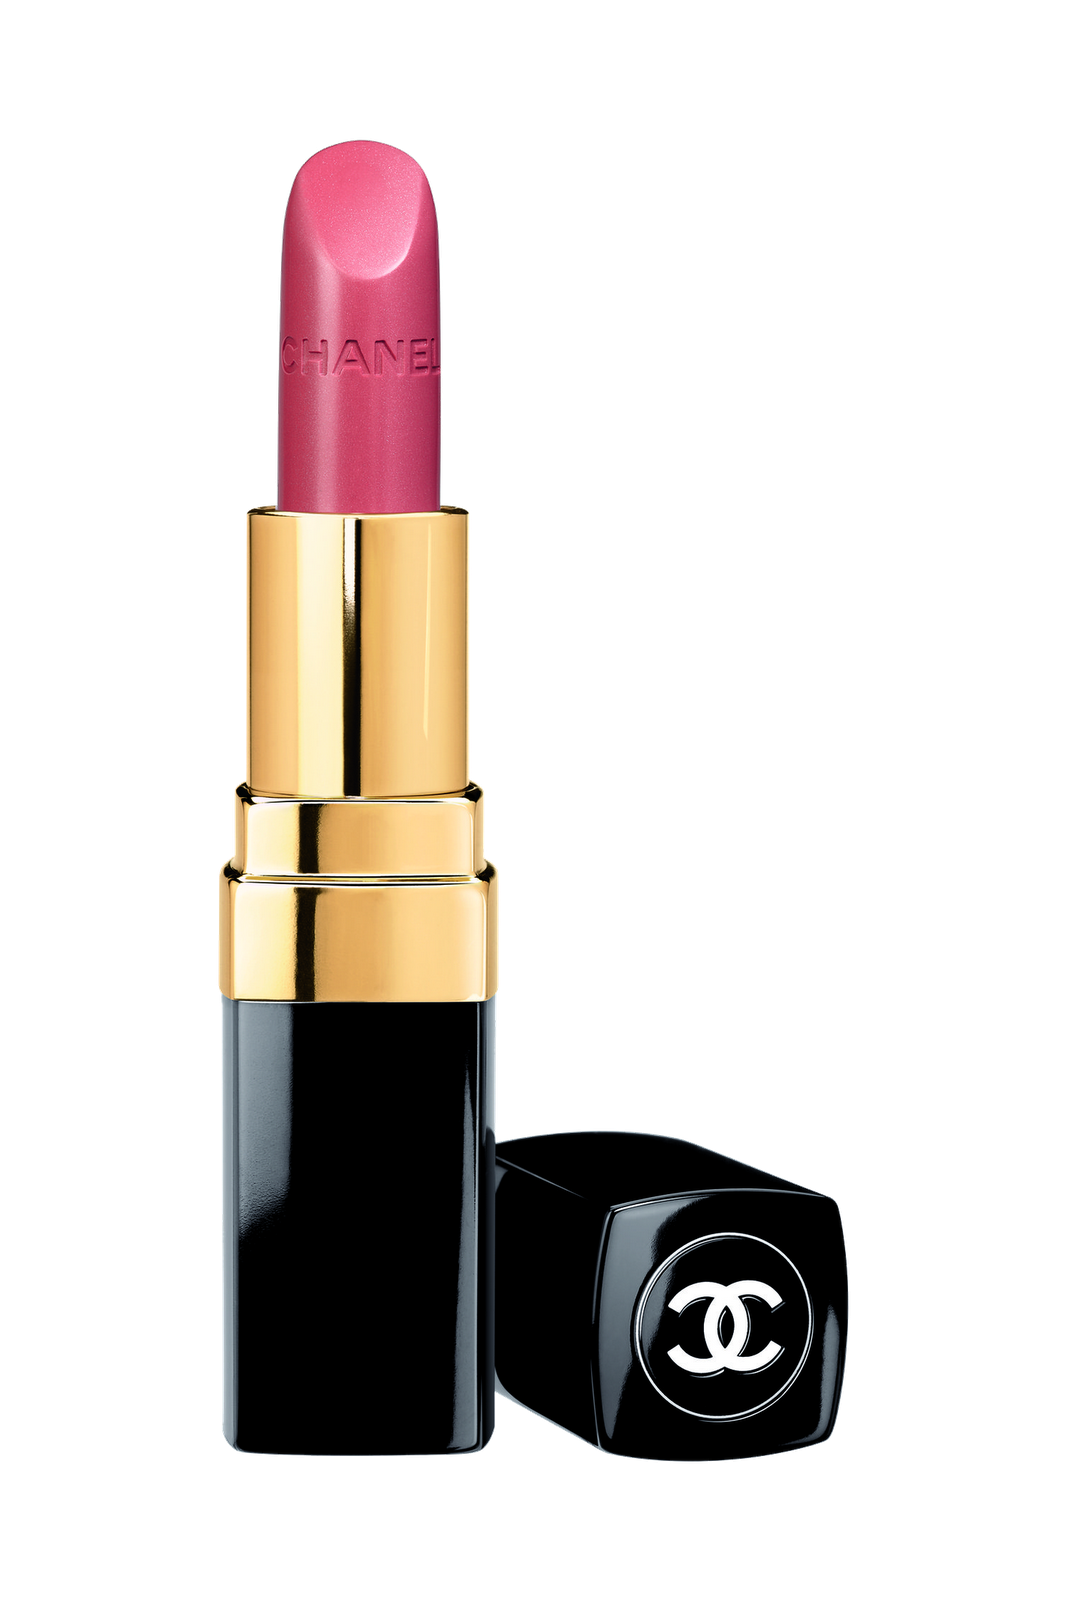 Chanel ROUGE COCO lipstick #434-mademoiselle Woman Makeup – Kechiq Concept  Boutique